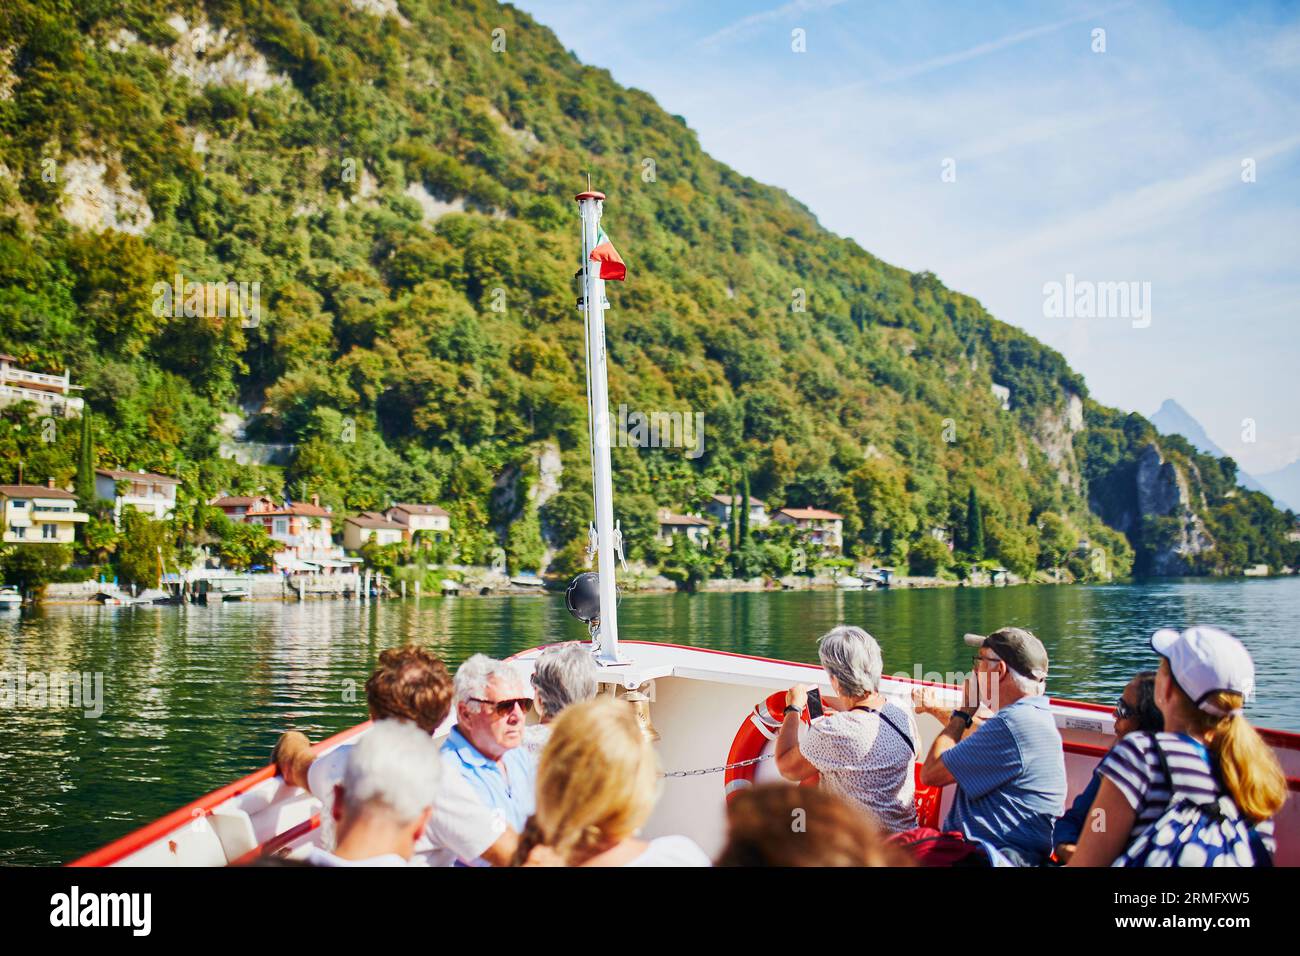 LUGANO, SUISSE - 22 SEPTEMBRE 2018 : les gens prennent une excursion en bateau au village de Gandria près de Lugano depuis le lac, canton du Tessin, Suisse Banque D'Images